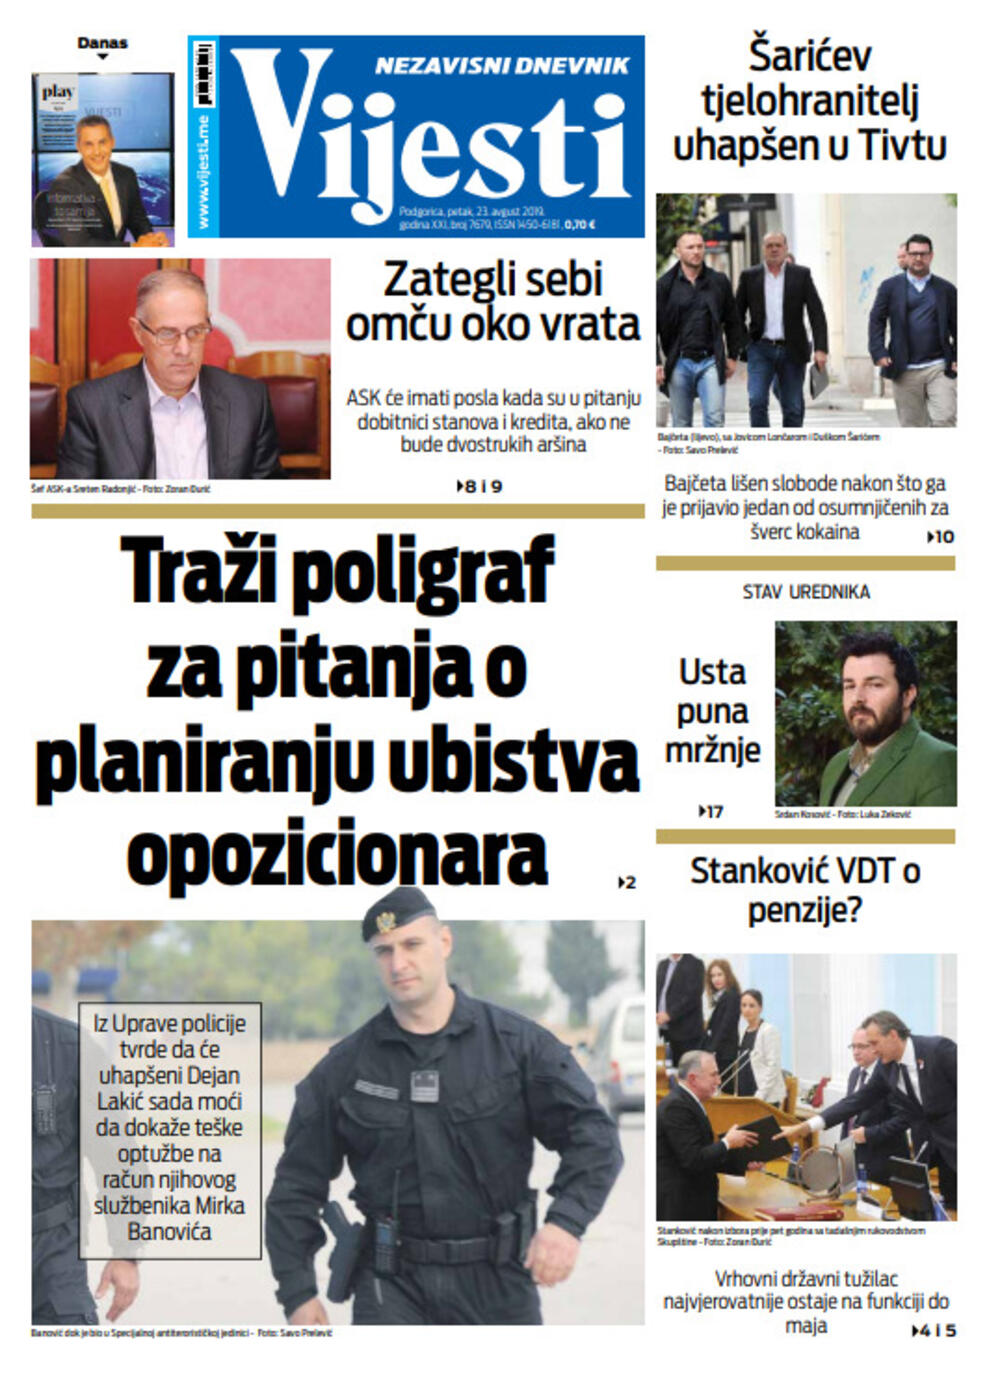 Naslovna strana "Vijesti" za 23. avgust, Foto: Vijesti